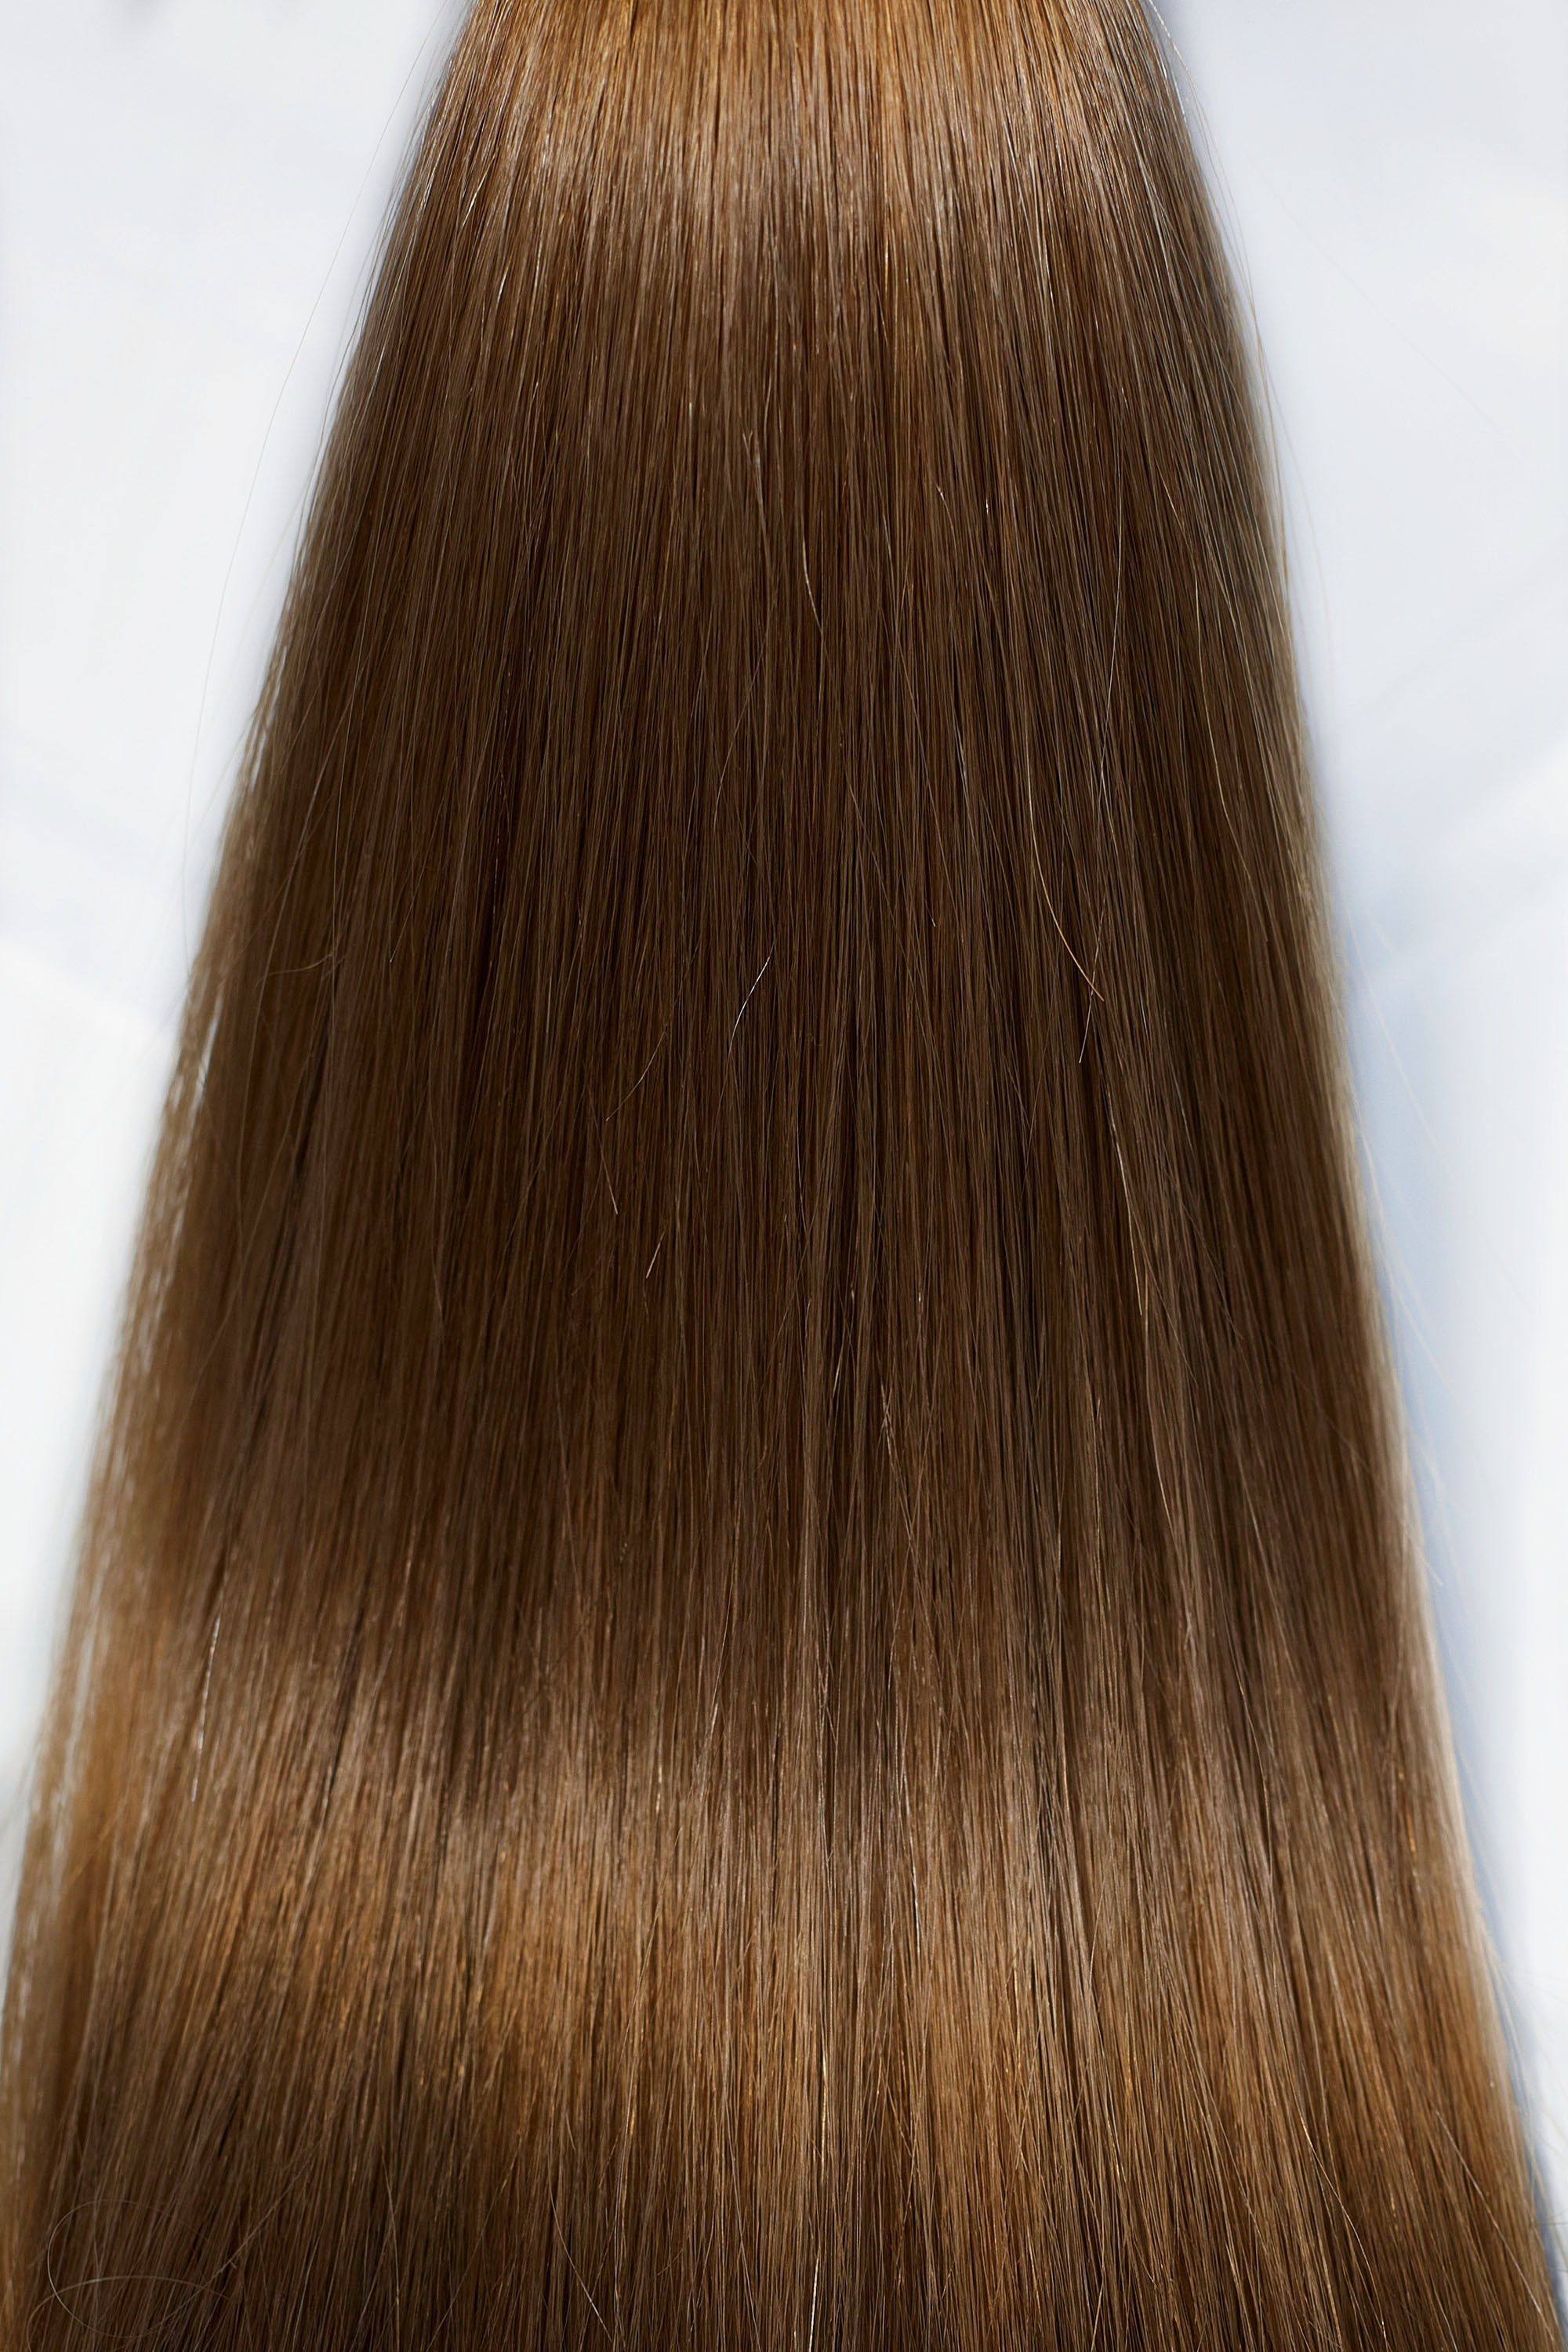 Behair professional Bulk hair "Premium" 26" (65cm) Natural Straight Chestnut #6 - 25g hair extensions